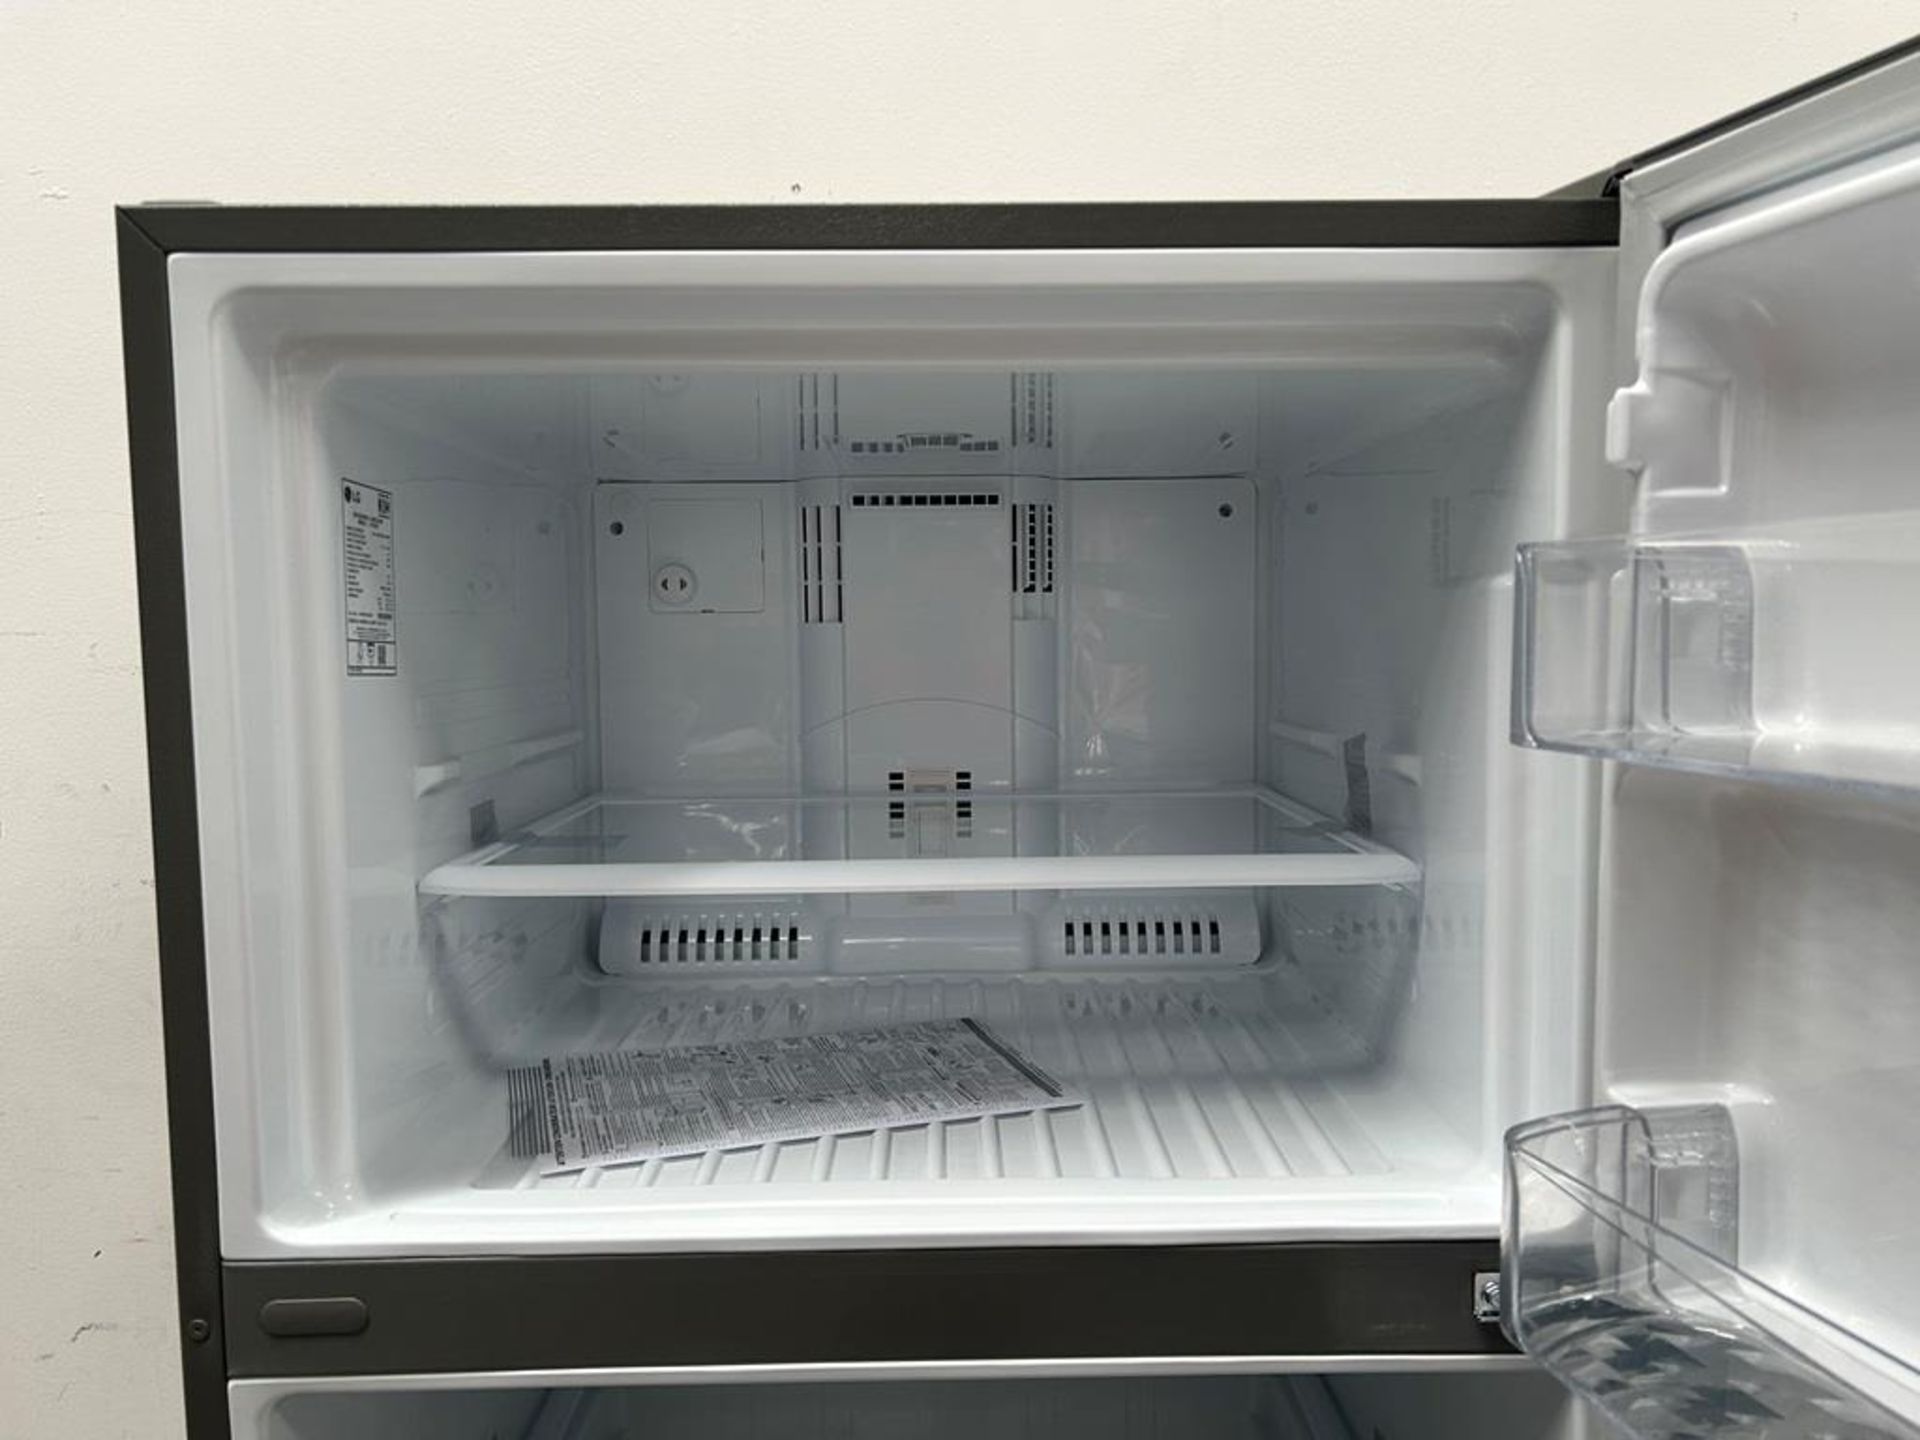 (NUEVO) Refrigerador Marca LG, Modelo LT57BPSX, Serie 1Q440, Color GRIS - Image 5 of 11